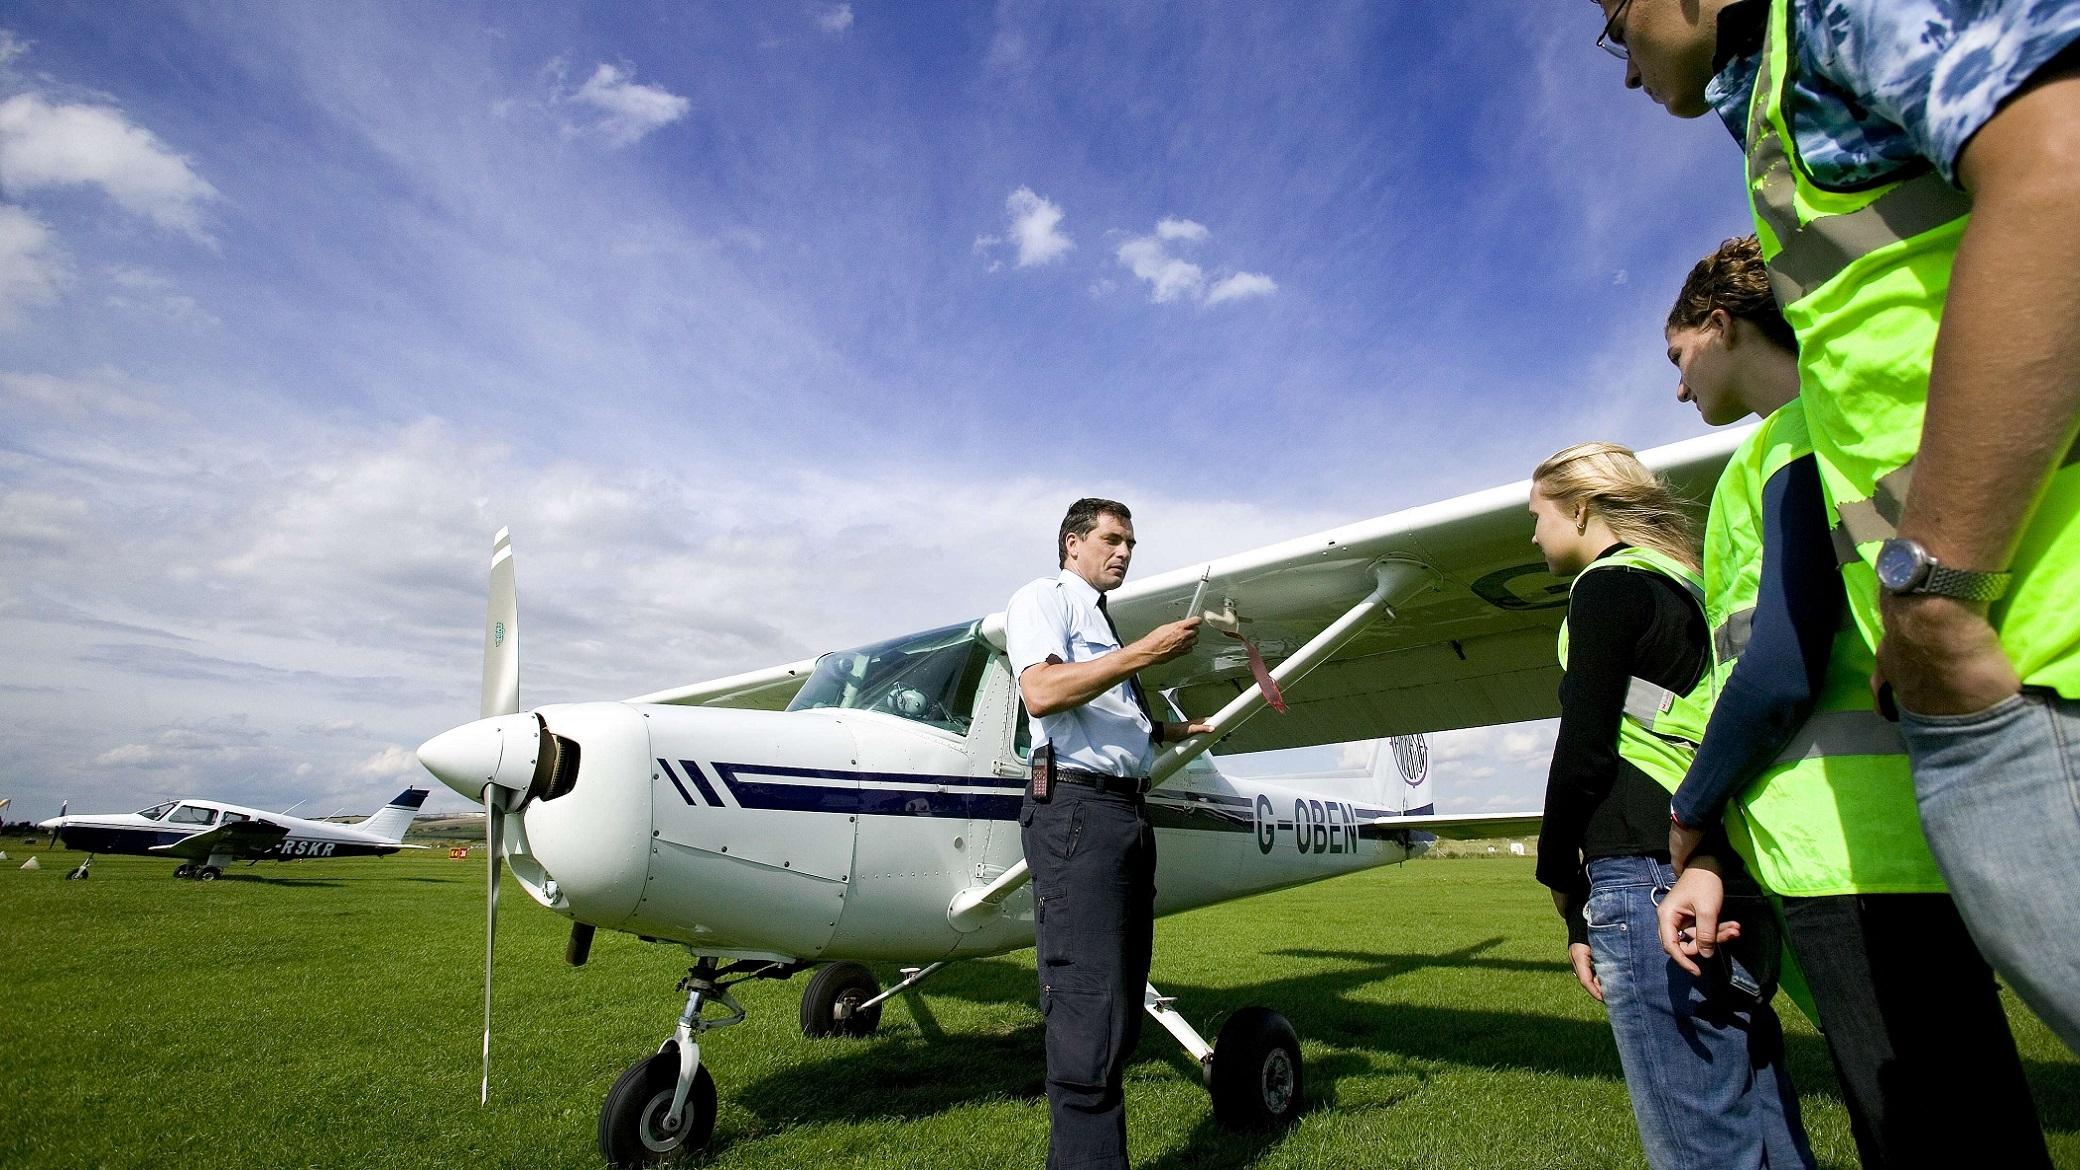 Уроки пилотирования в летней школе в Сассексе